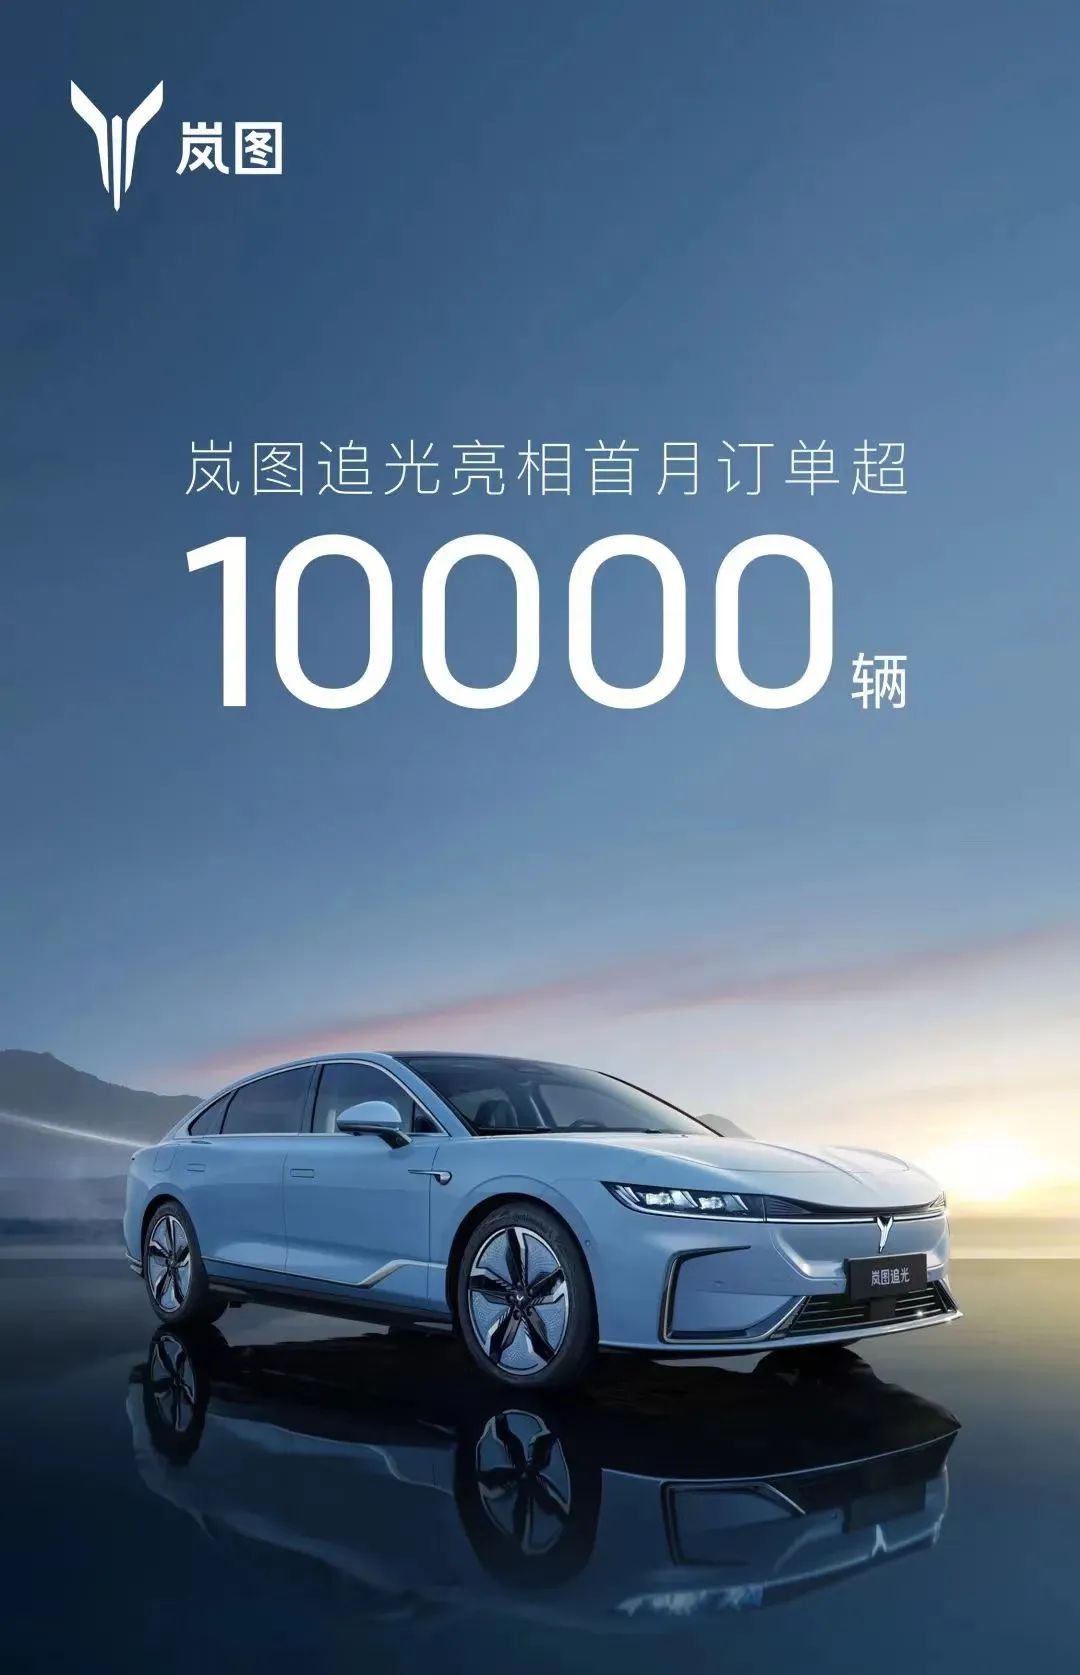 岚图追光首批量产车型下线 首月订单超10000辆